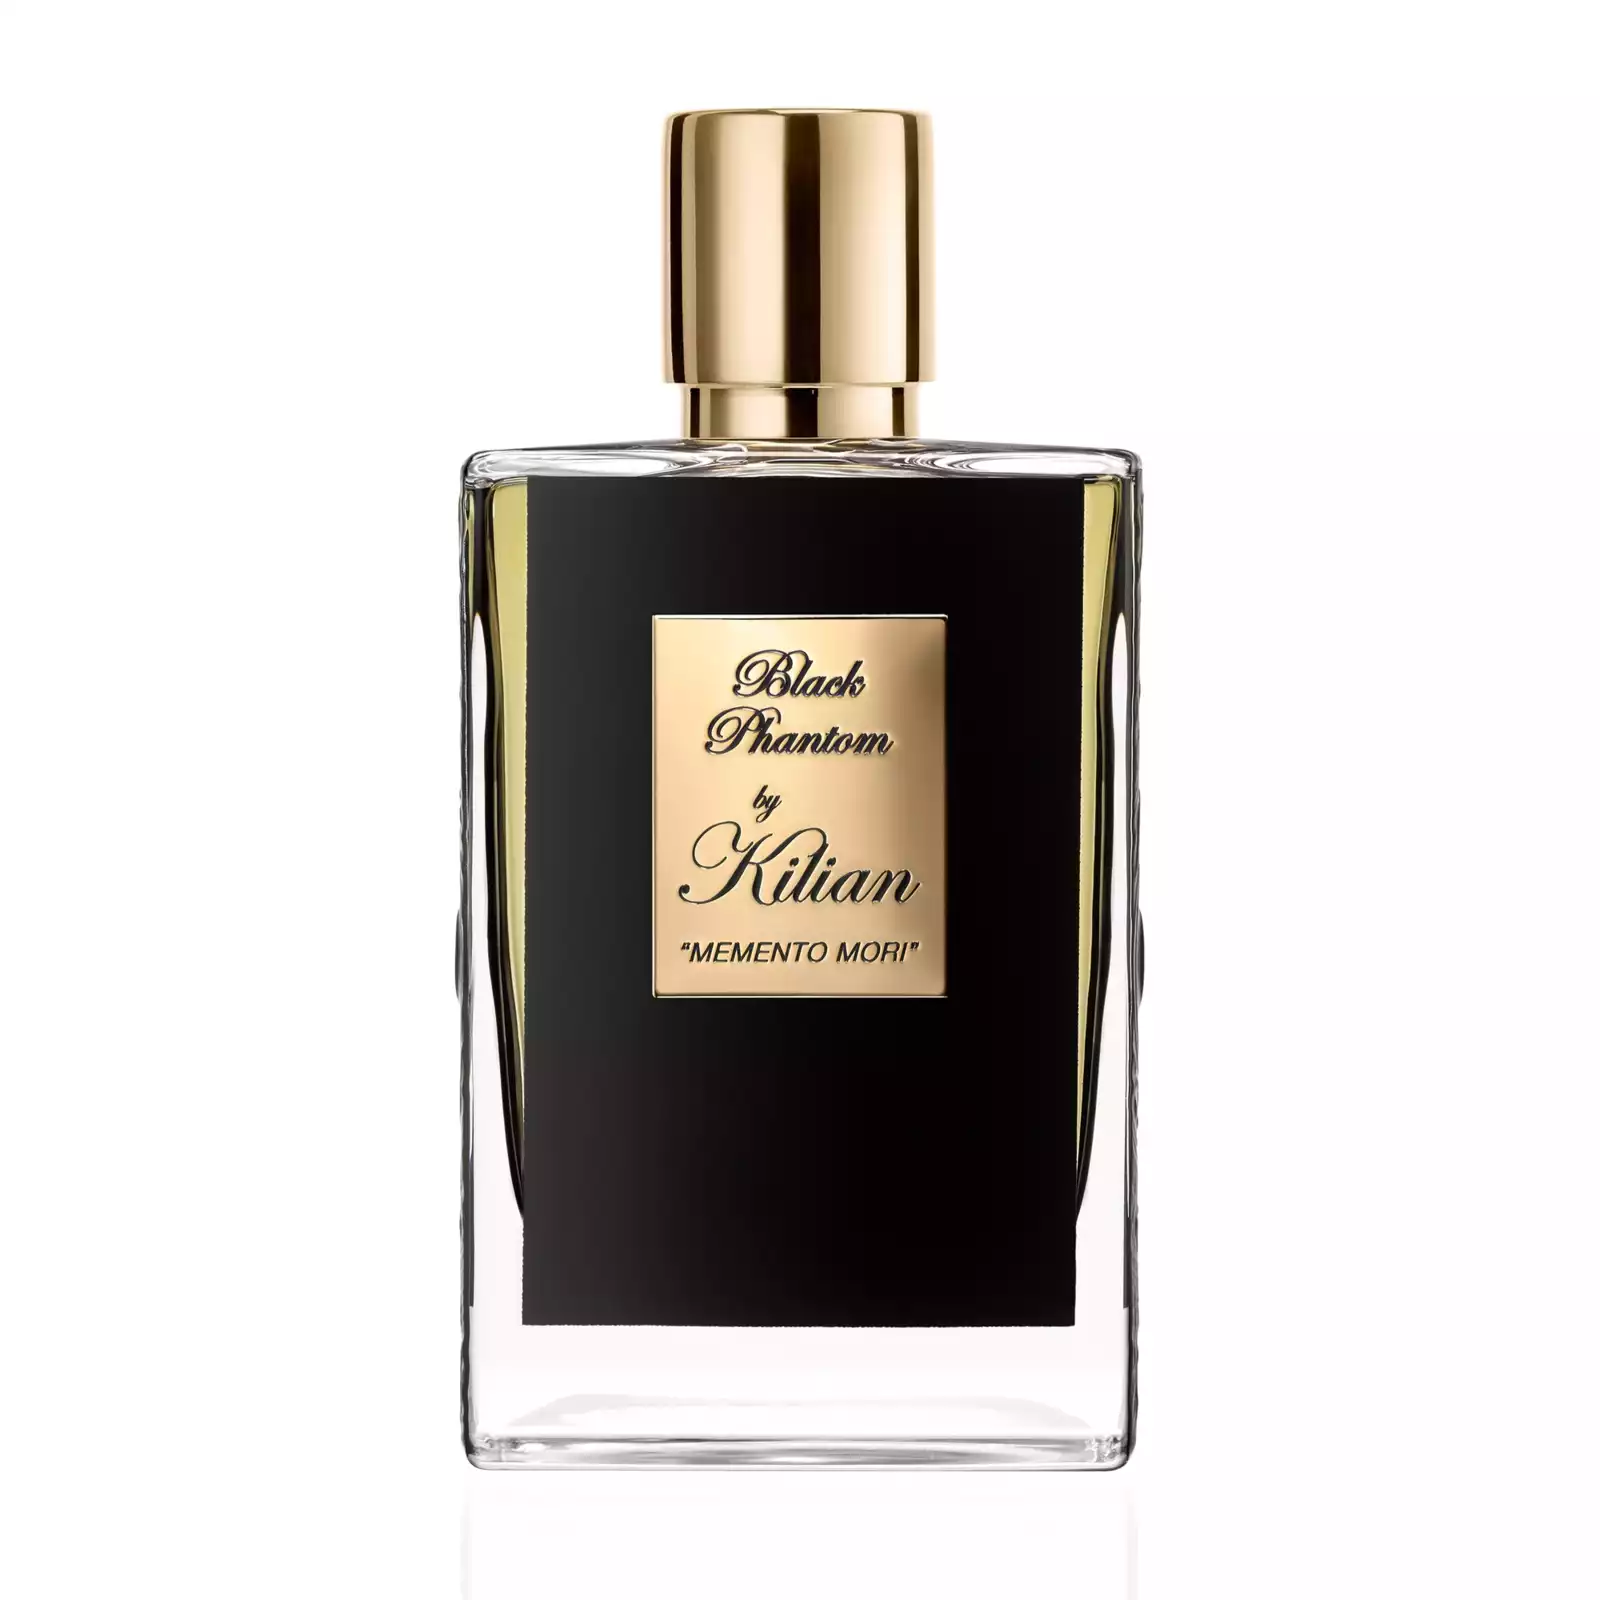 – Black Phantom ‘MEMENTO MORI’ Eau de Parfum